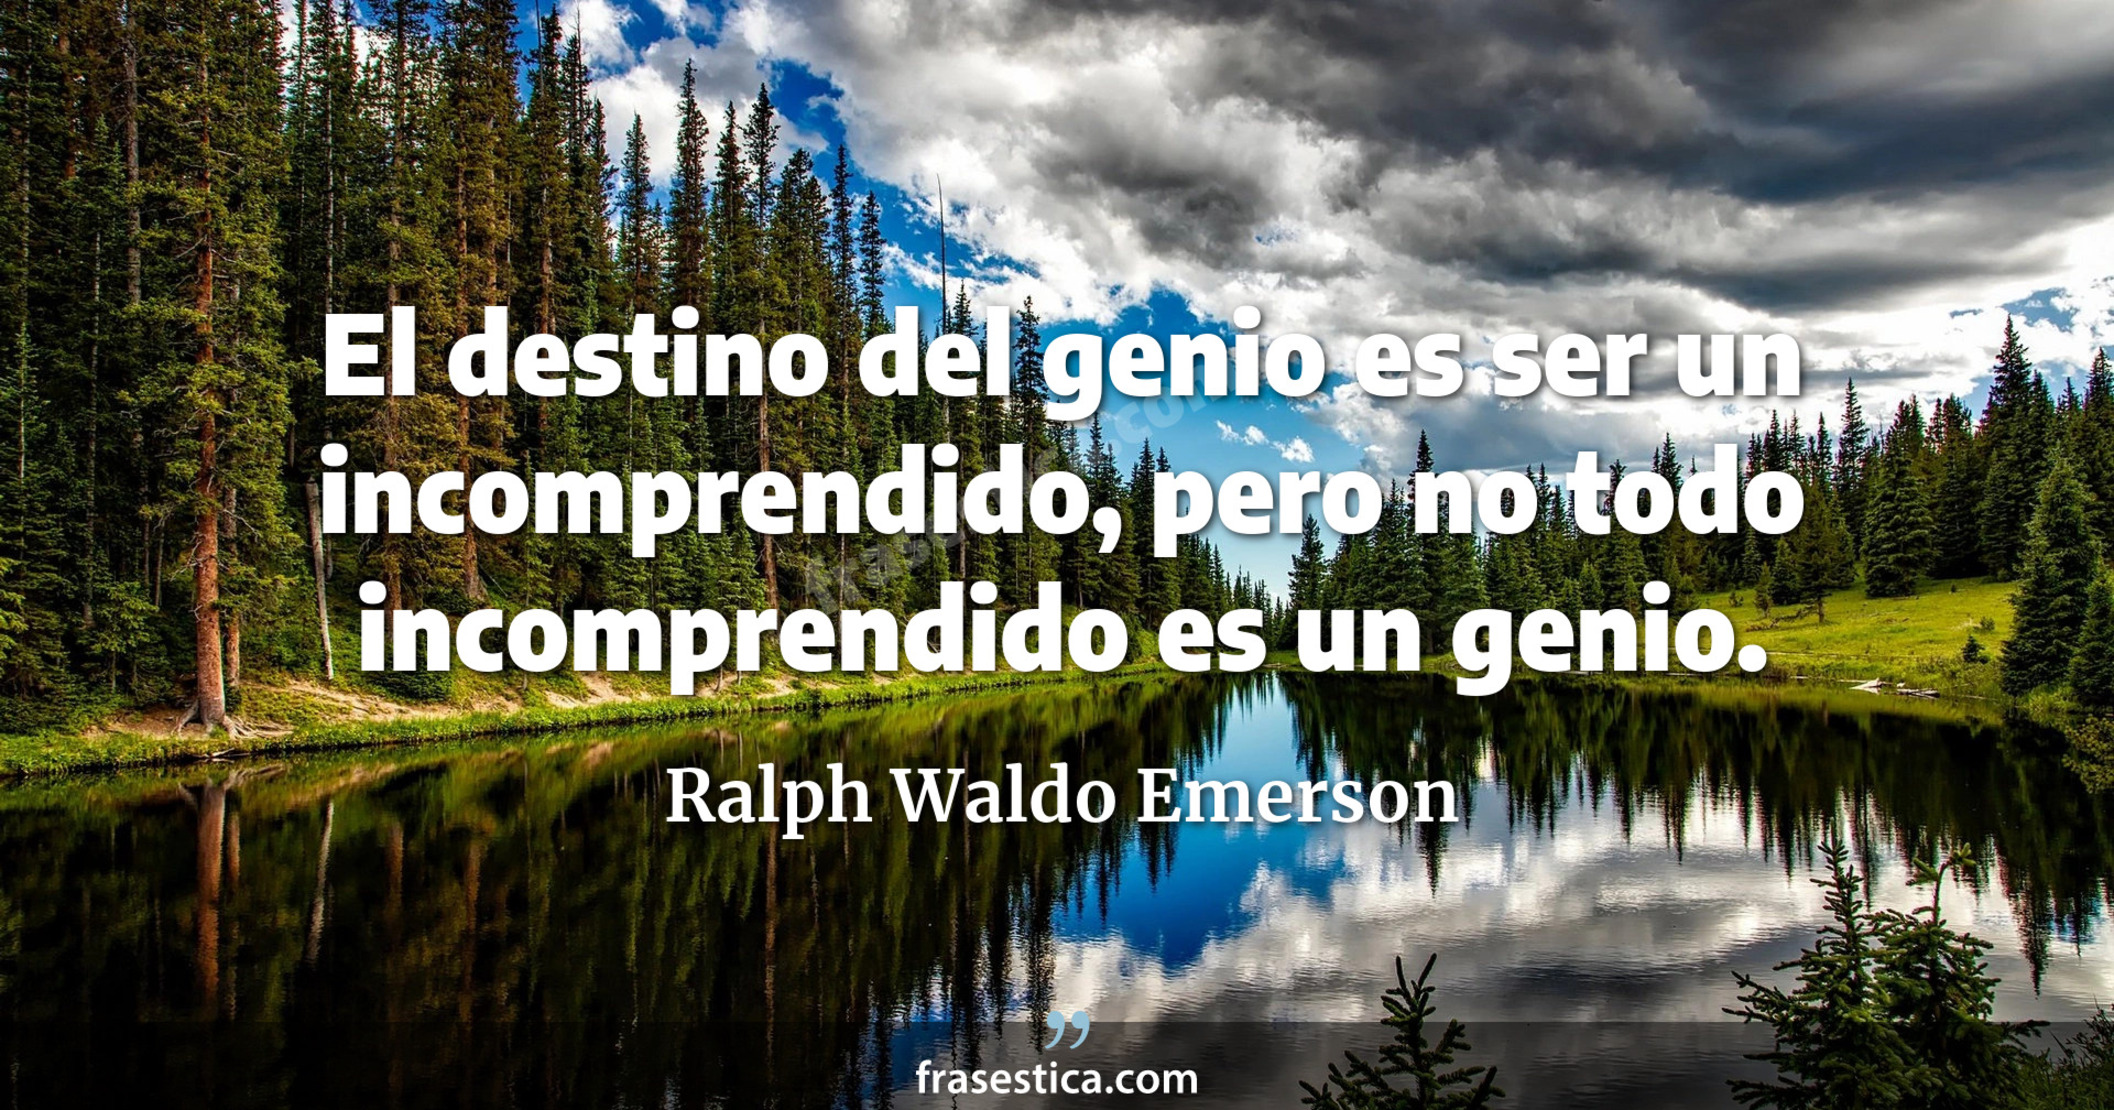 El destino del genio es ser un incomprendido, pero no todo incomprendido es un genio. - Ralph Waldo Emerson